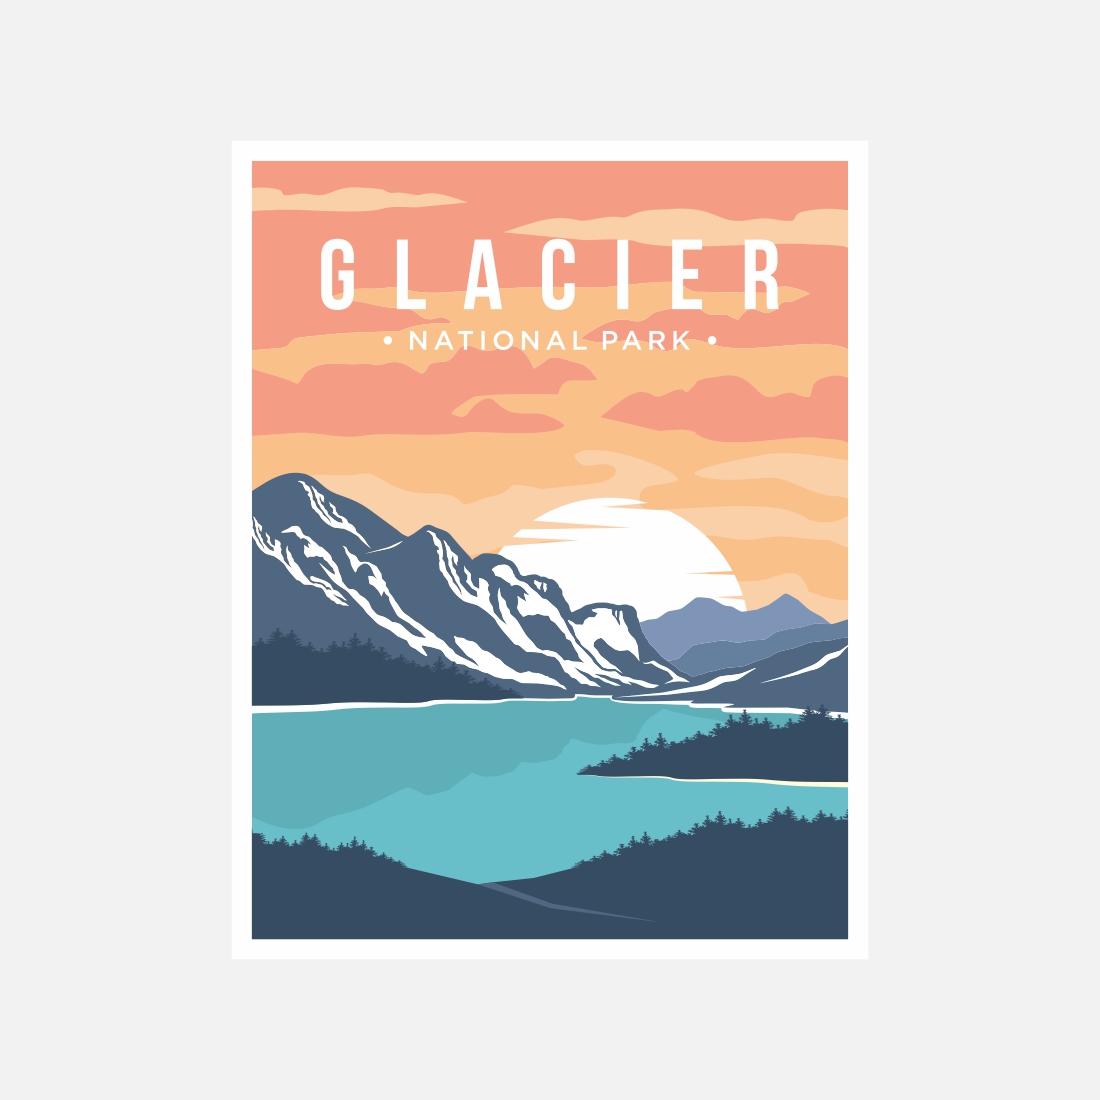 Glacier National Park poster vector illustration design – Only $8 preview image.